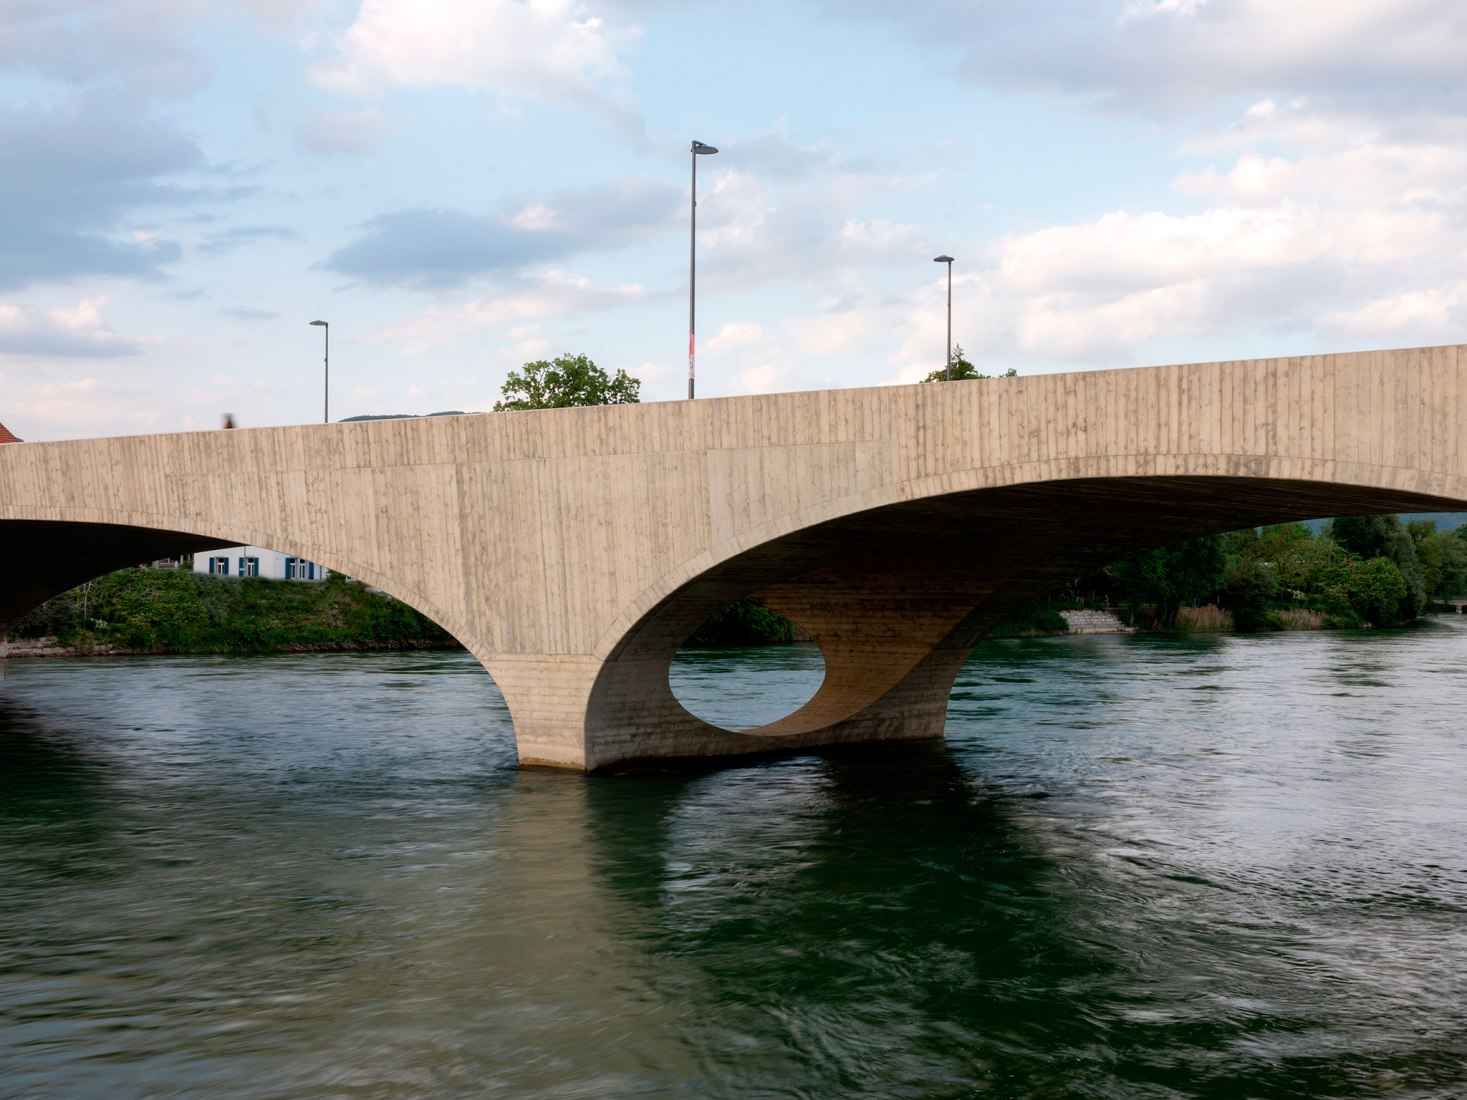 Nuevo puente Aare por Christ & Gantenbein. Fotografía por Stefano Graziani.